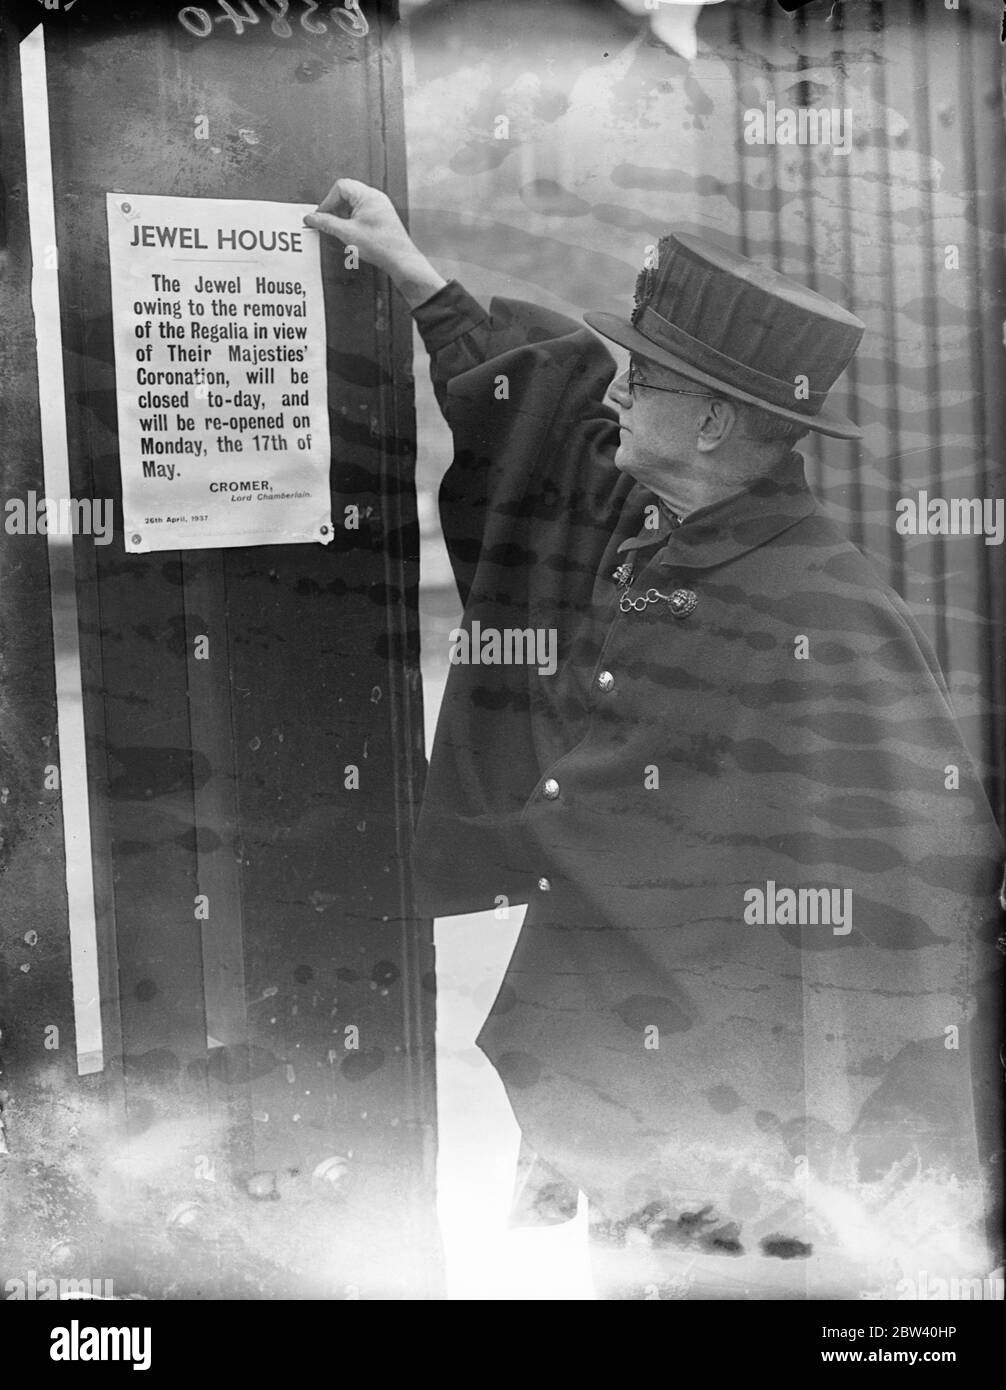 Wakefield Tower geschlossen, da Kronjuwelen zur Krönung entfernt werden. Aufgrund der Entfernung der Kronjuwelen zur Krönung ist der Wakefield Tower am Tower of London bis Mitte Mai für die Öffentlichkeit geschlossen. Foto zeigt: Ein Yeoman Warden, der die Ankündigung der Schließung des Jewel House am Tower feststellt. 26. April 1937 Stockfoto